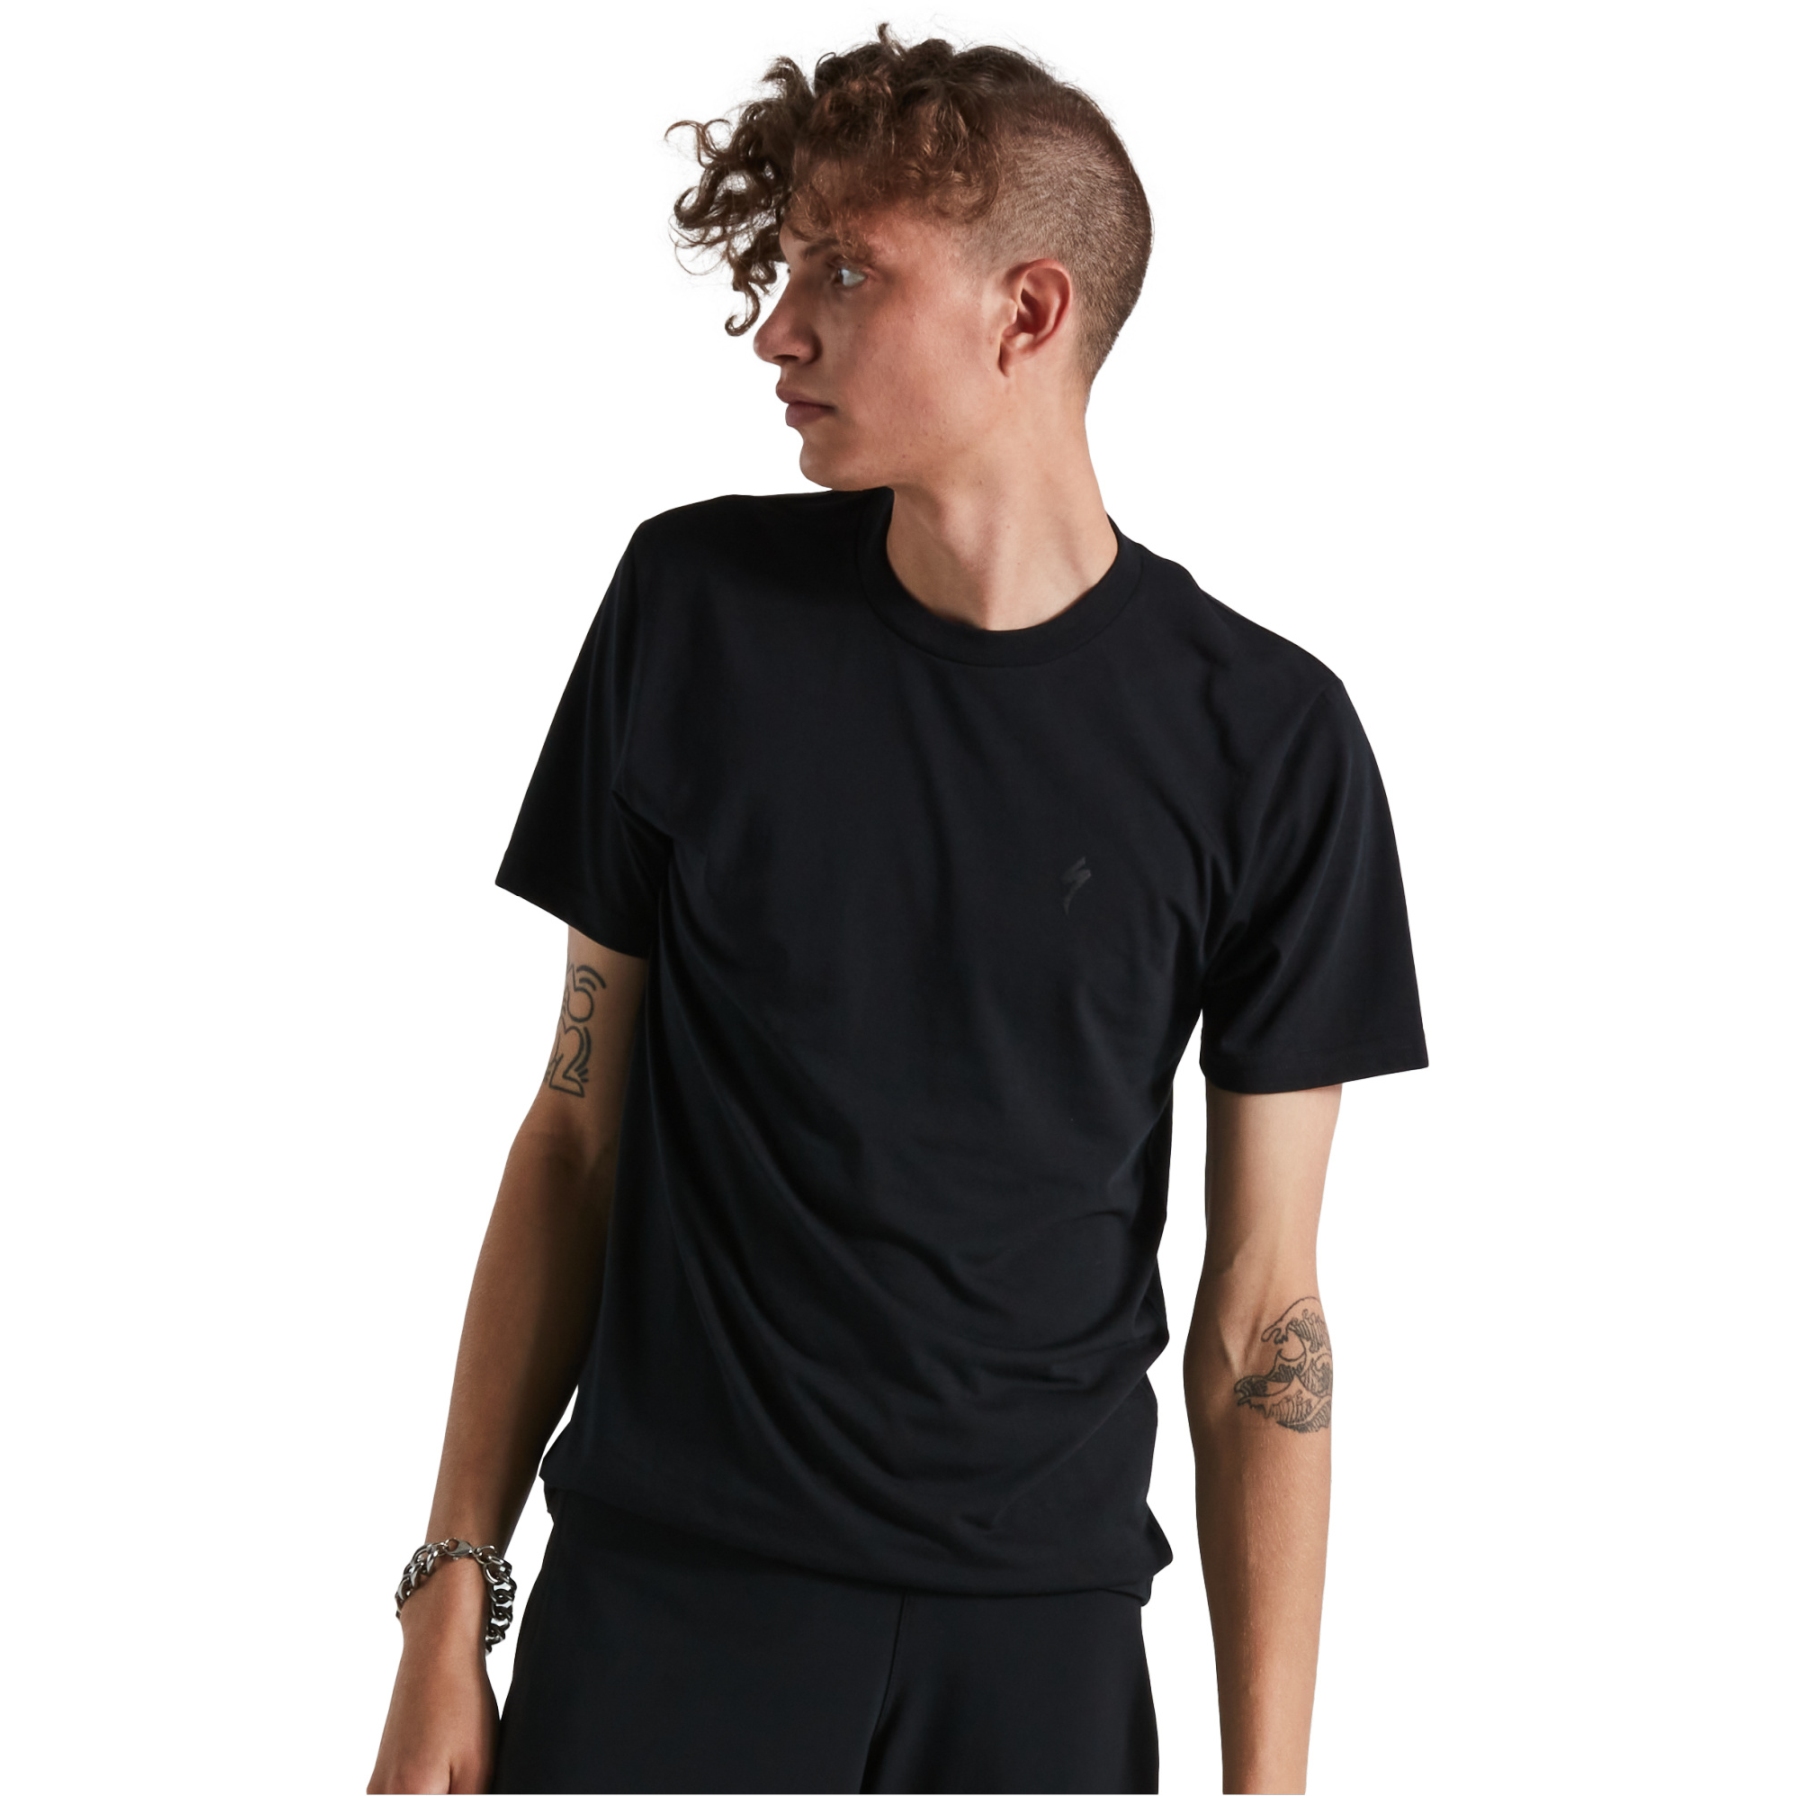 Produktbild von Specialized Sonne T-Shirt - schwarz